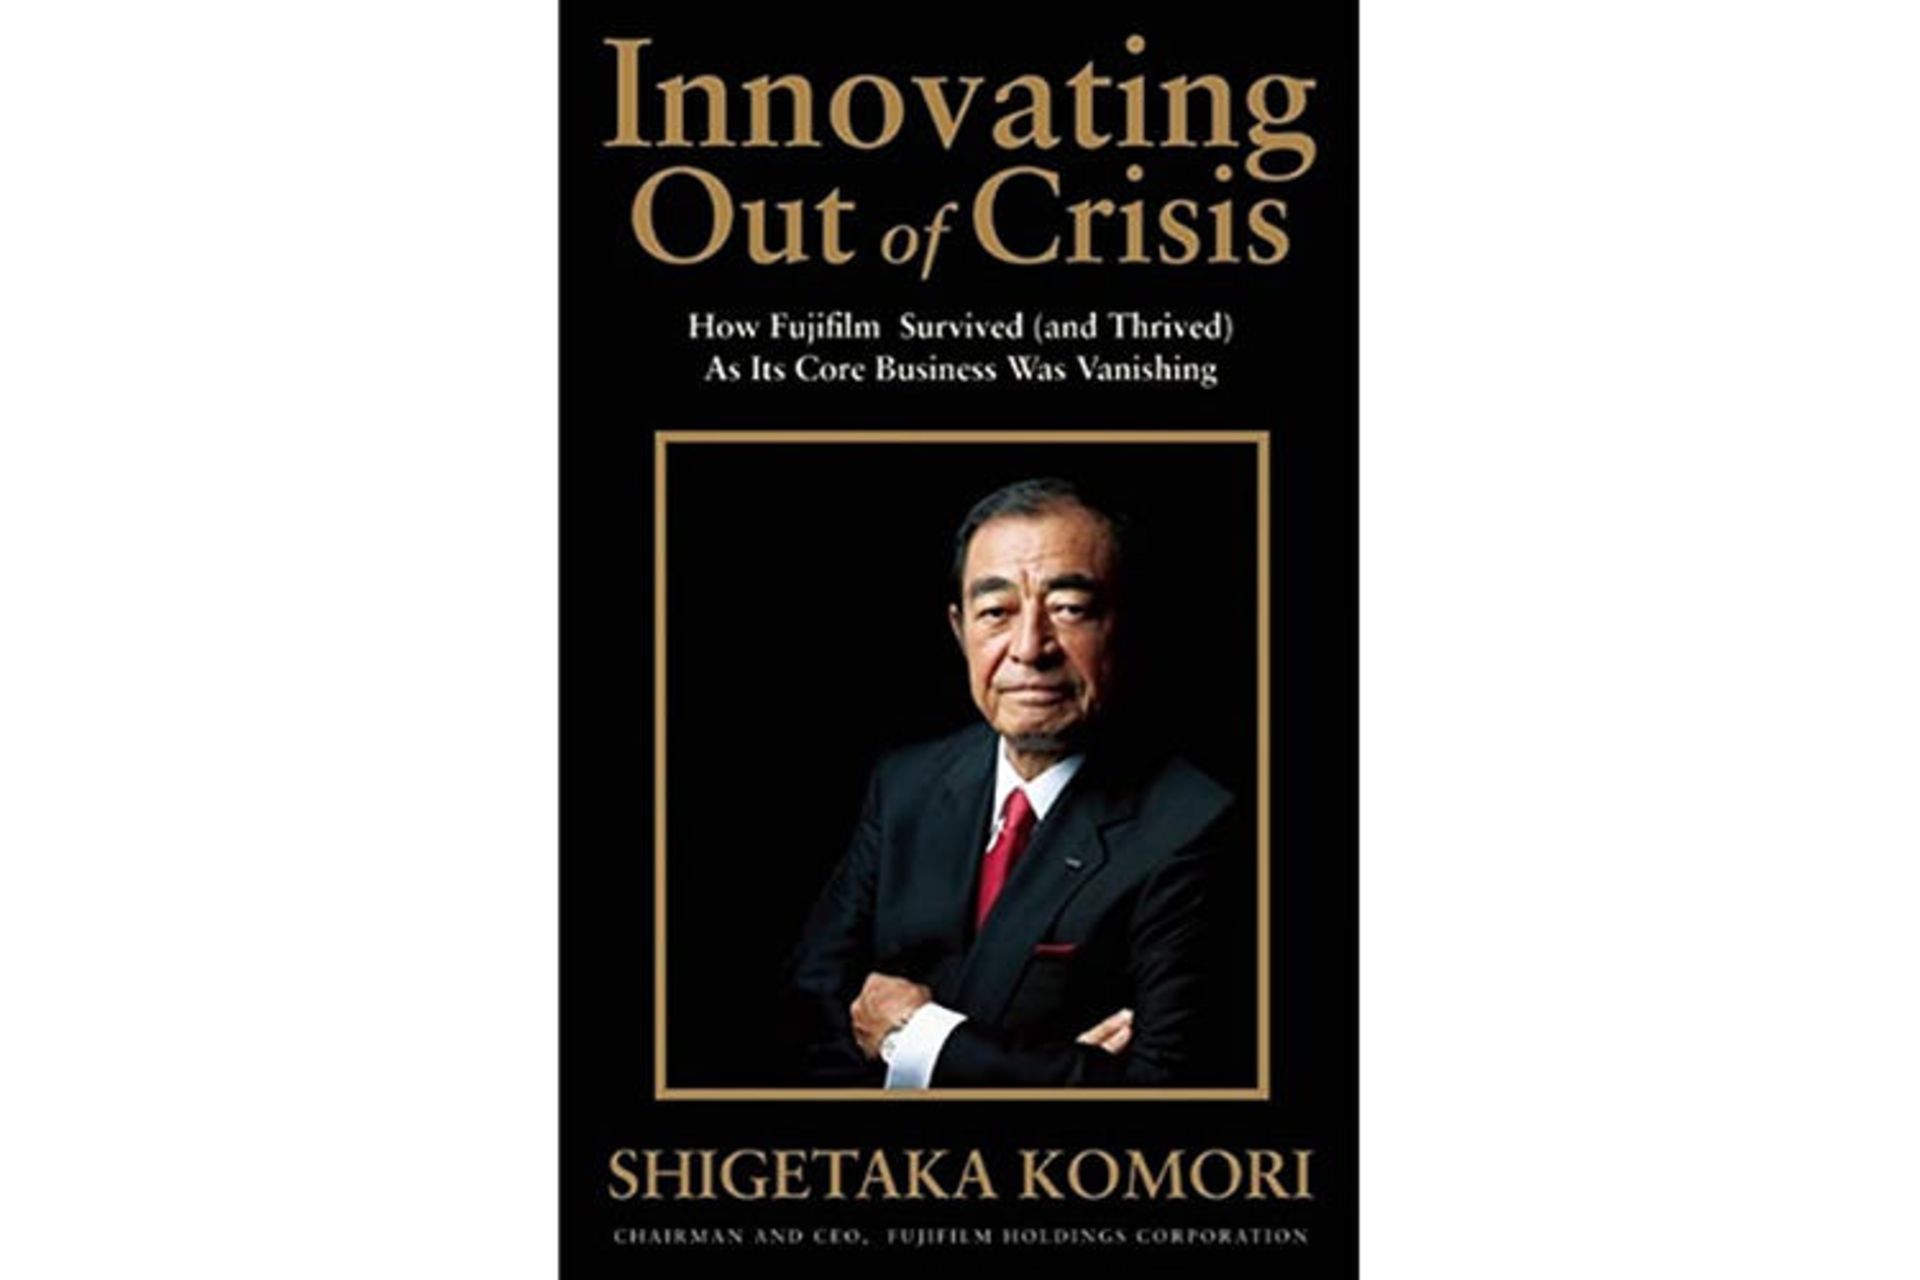 نوآوری در بحران / Innovating Out of Crisis